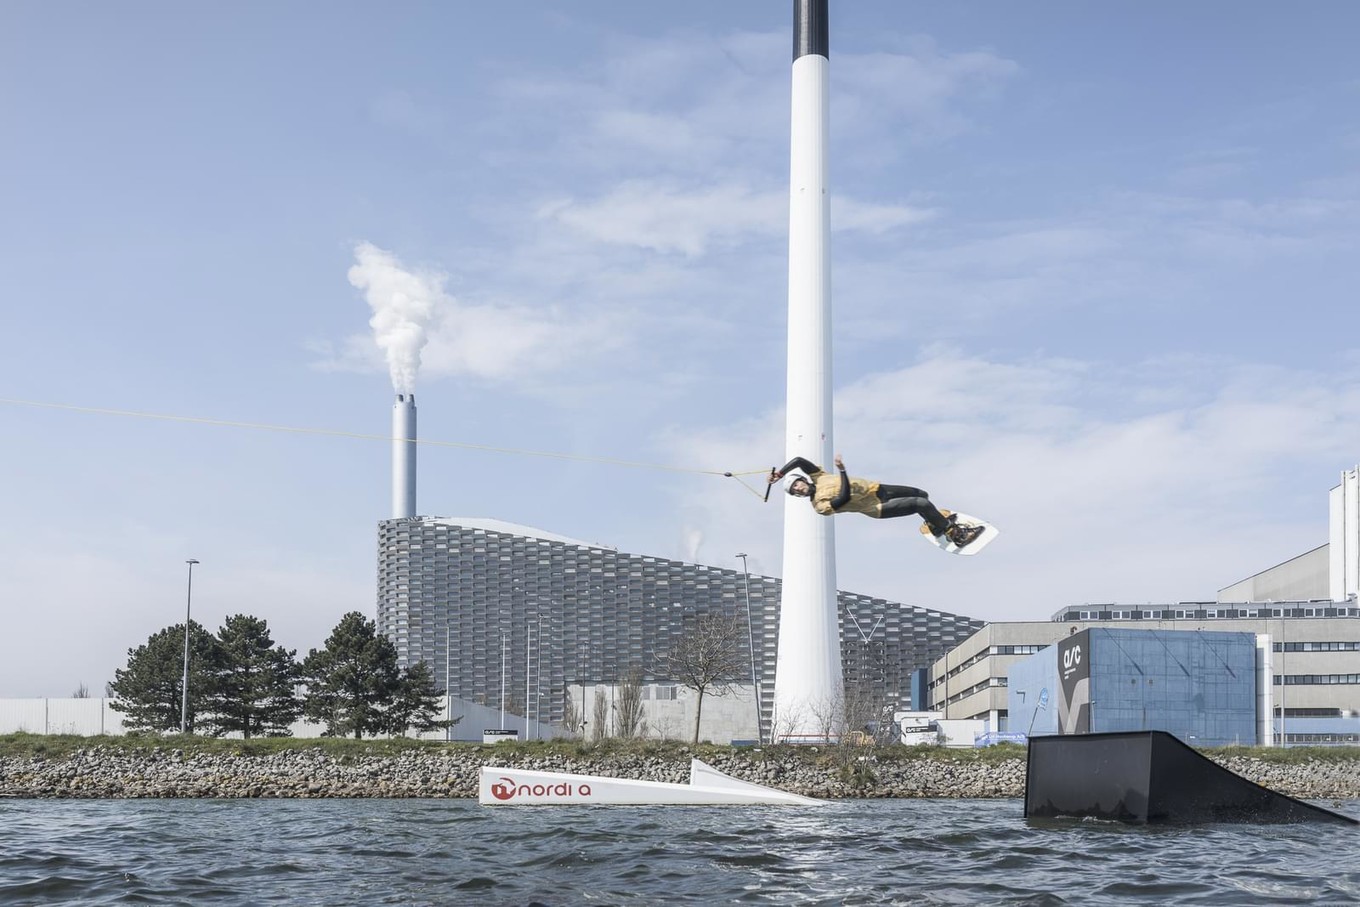 Завод по переработке отходов в энергию с развлекательной инфраструктурой в Копенгагене